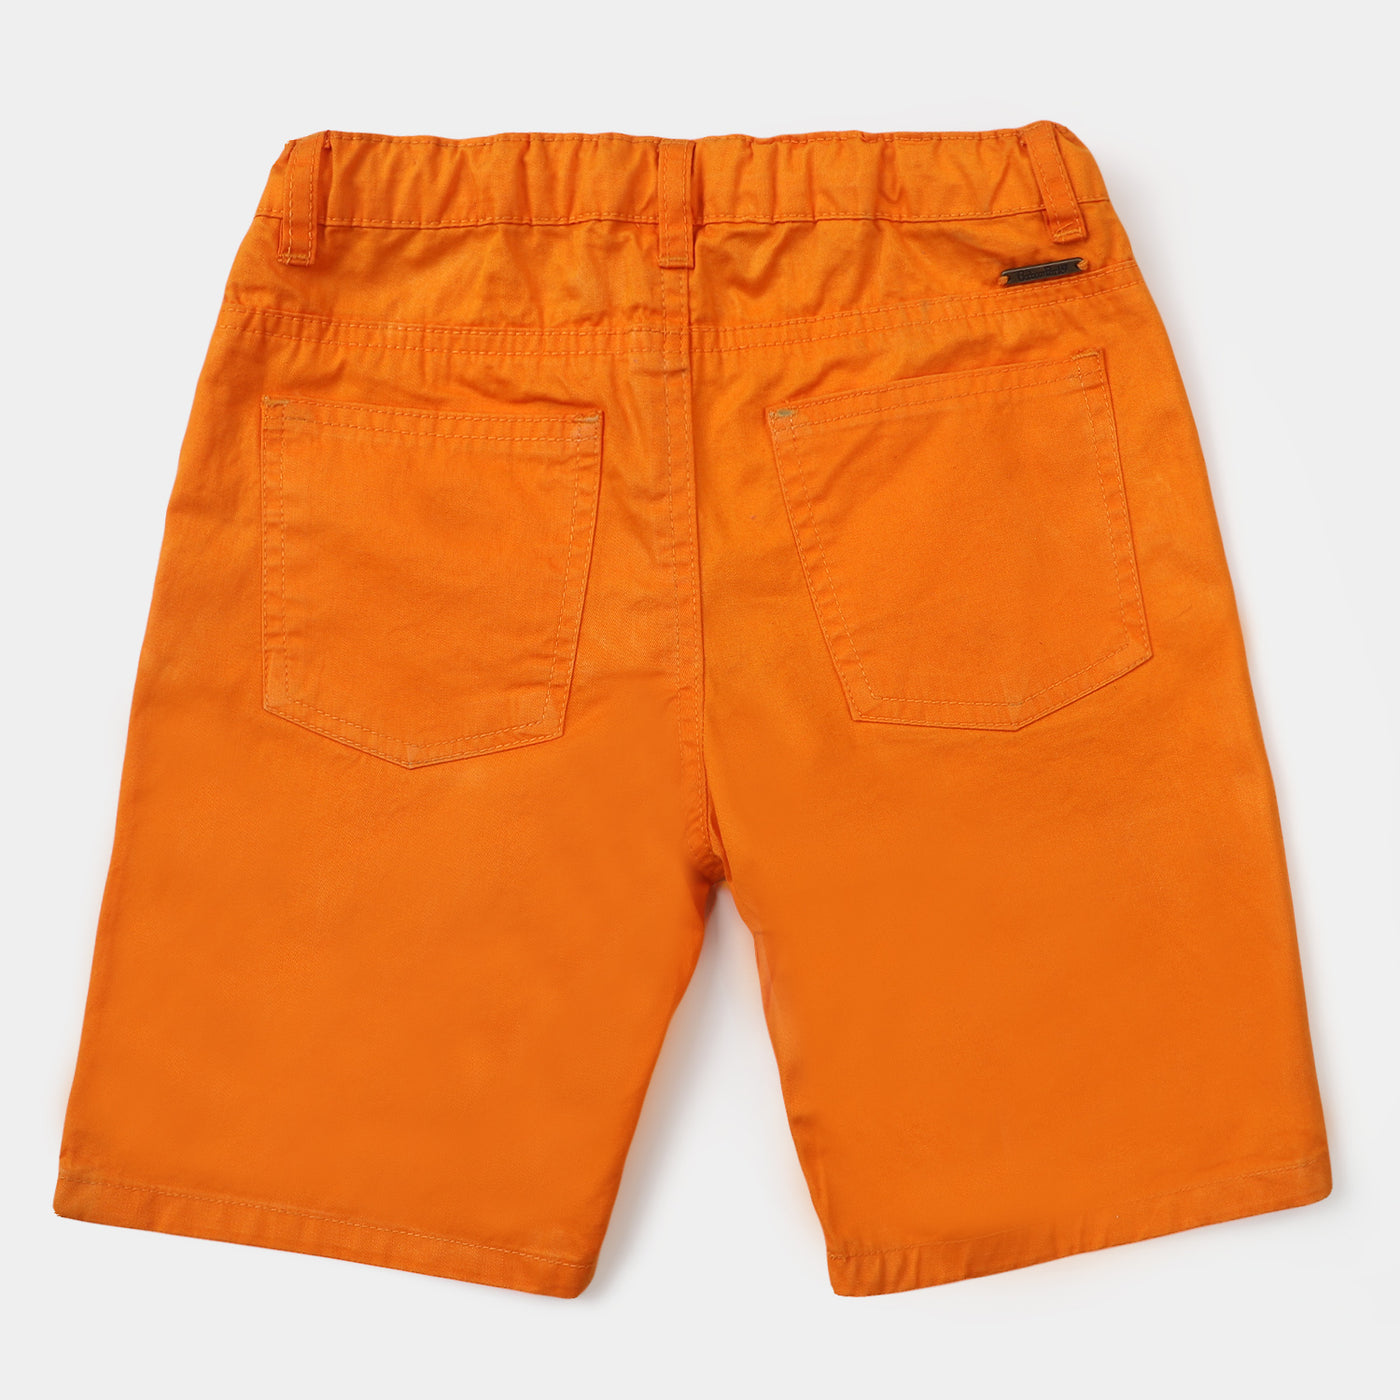 Boys Cotton Short Basic - Orange